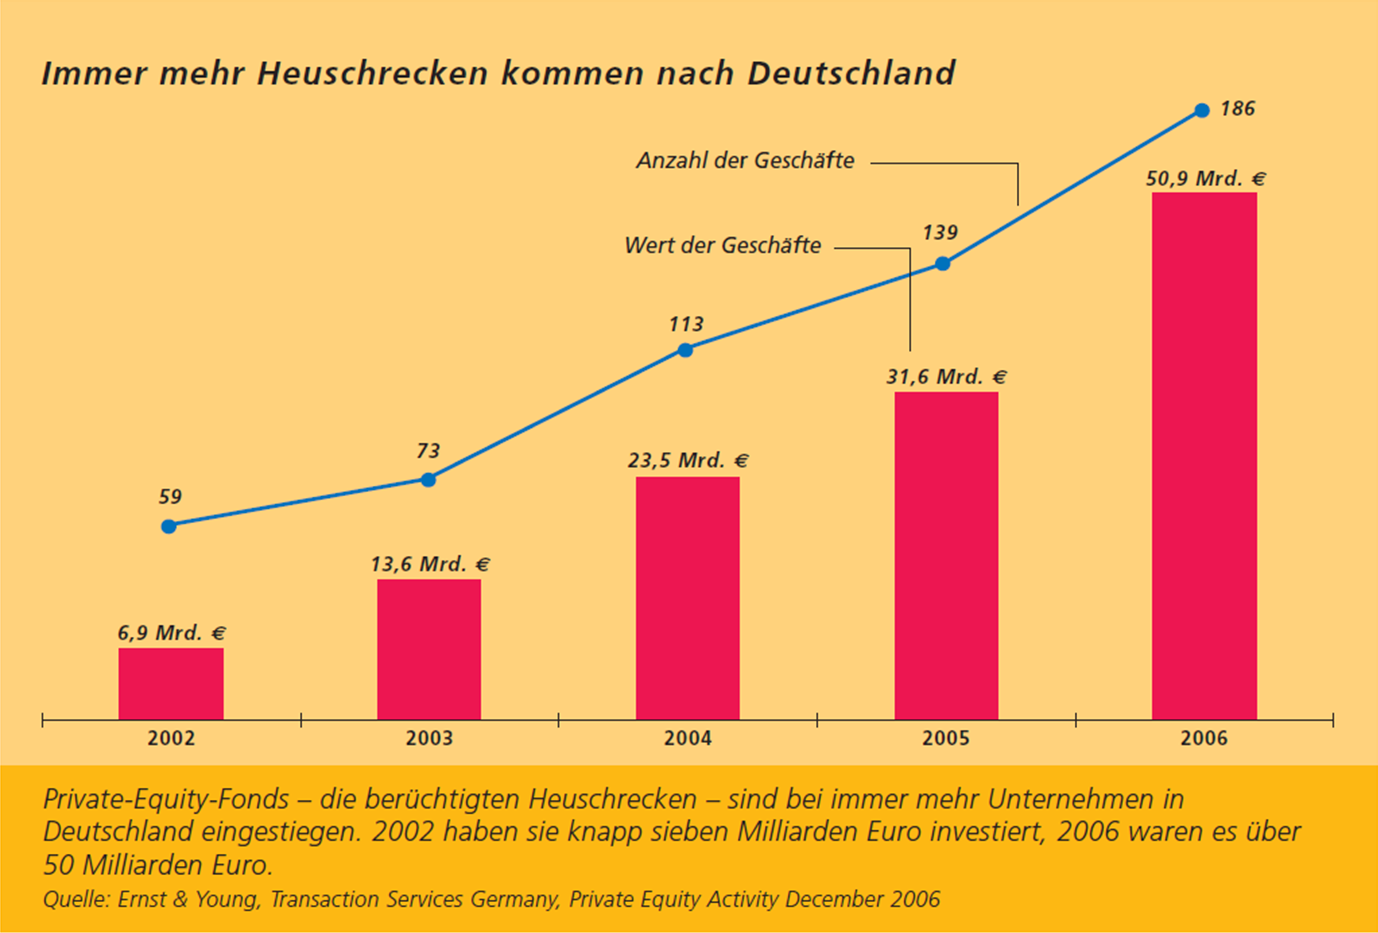 In Deutschland seit 2003 starker Anstieg der